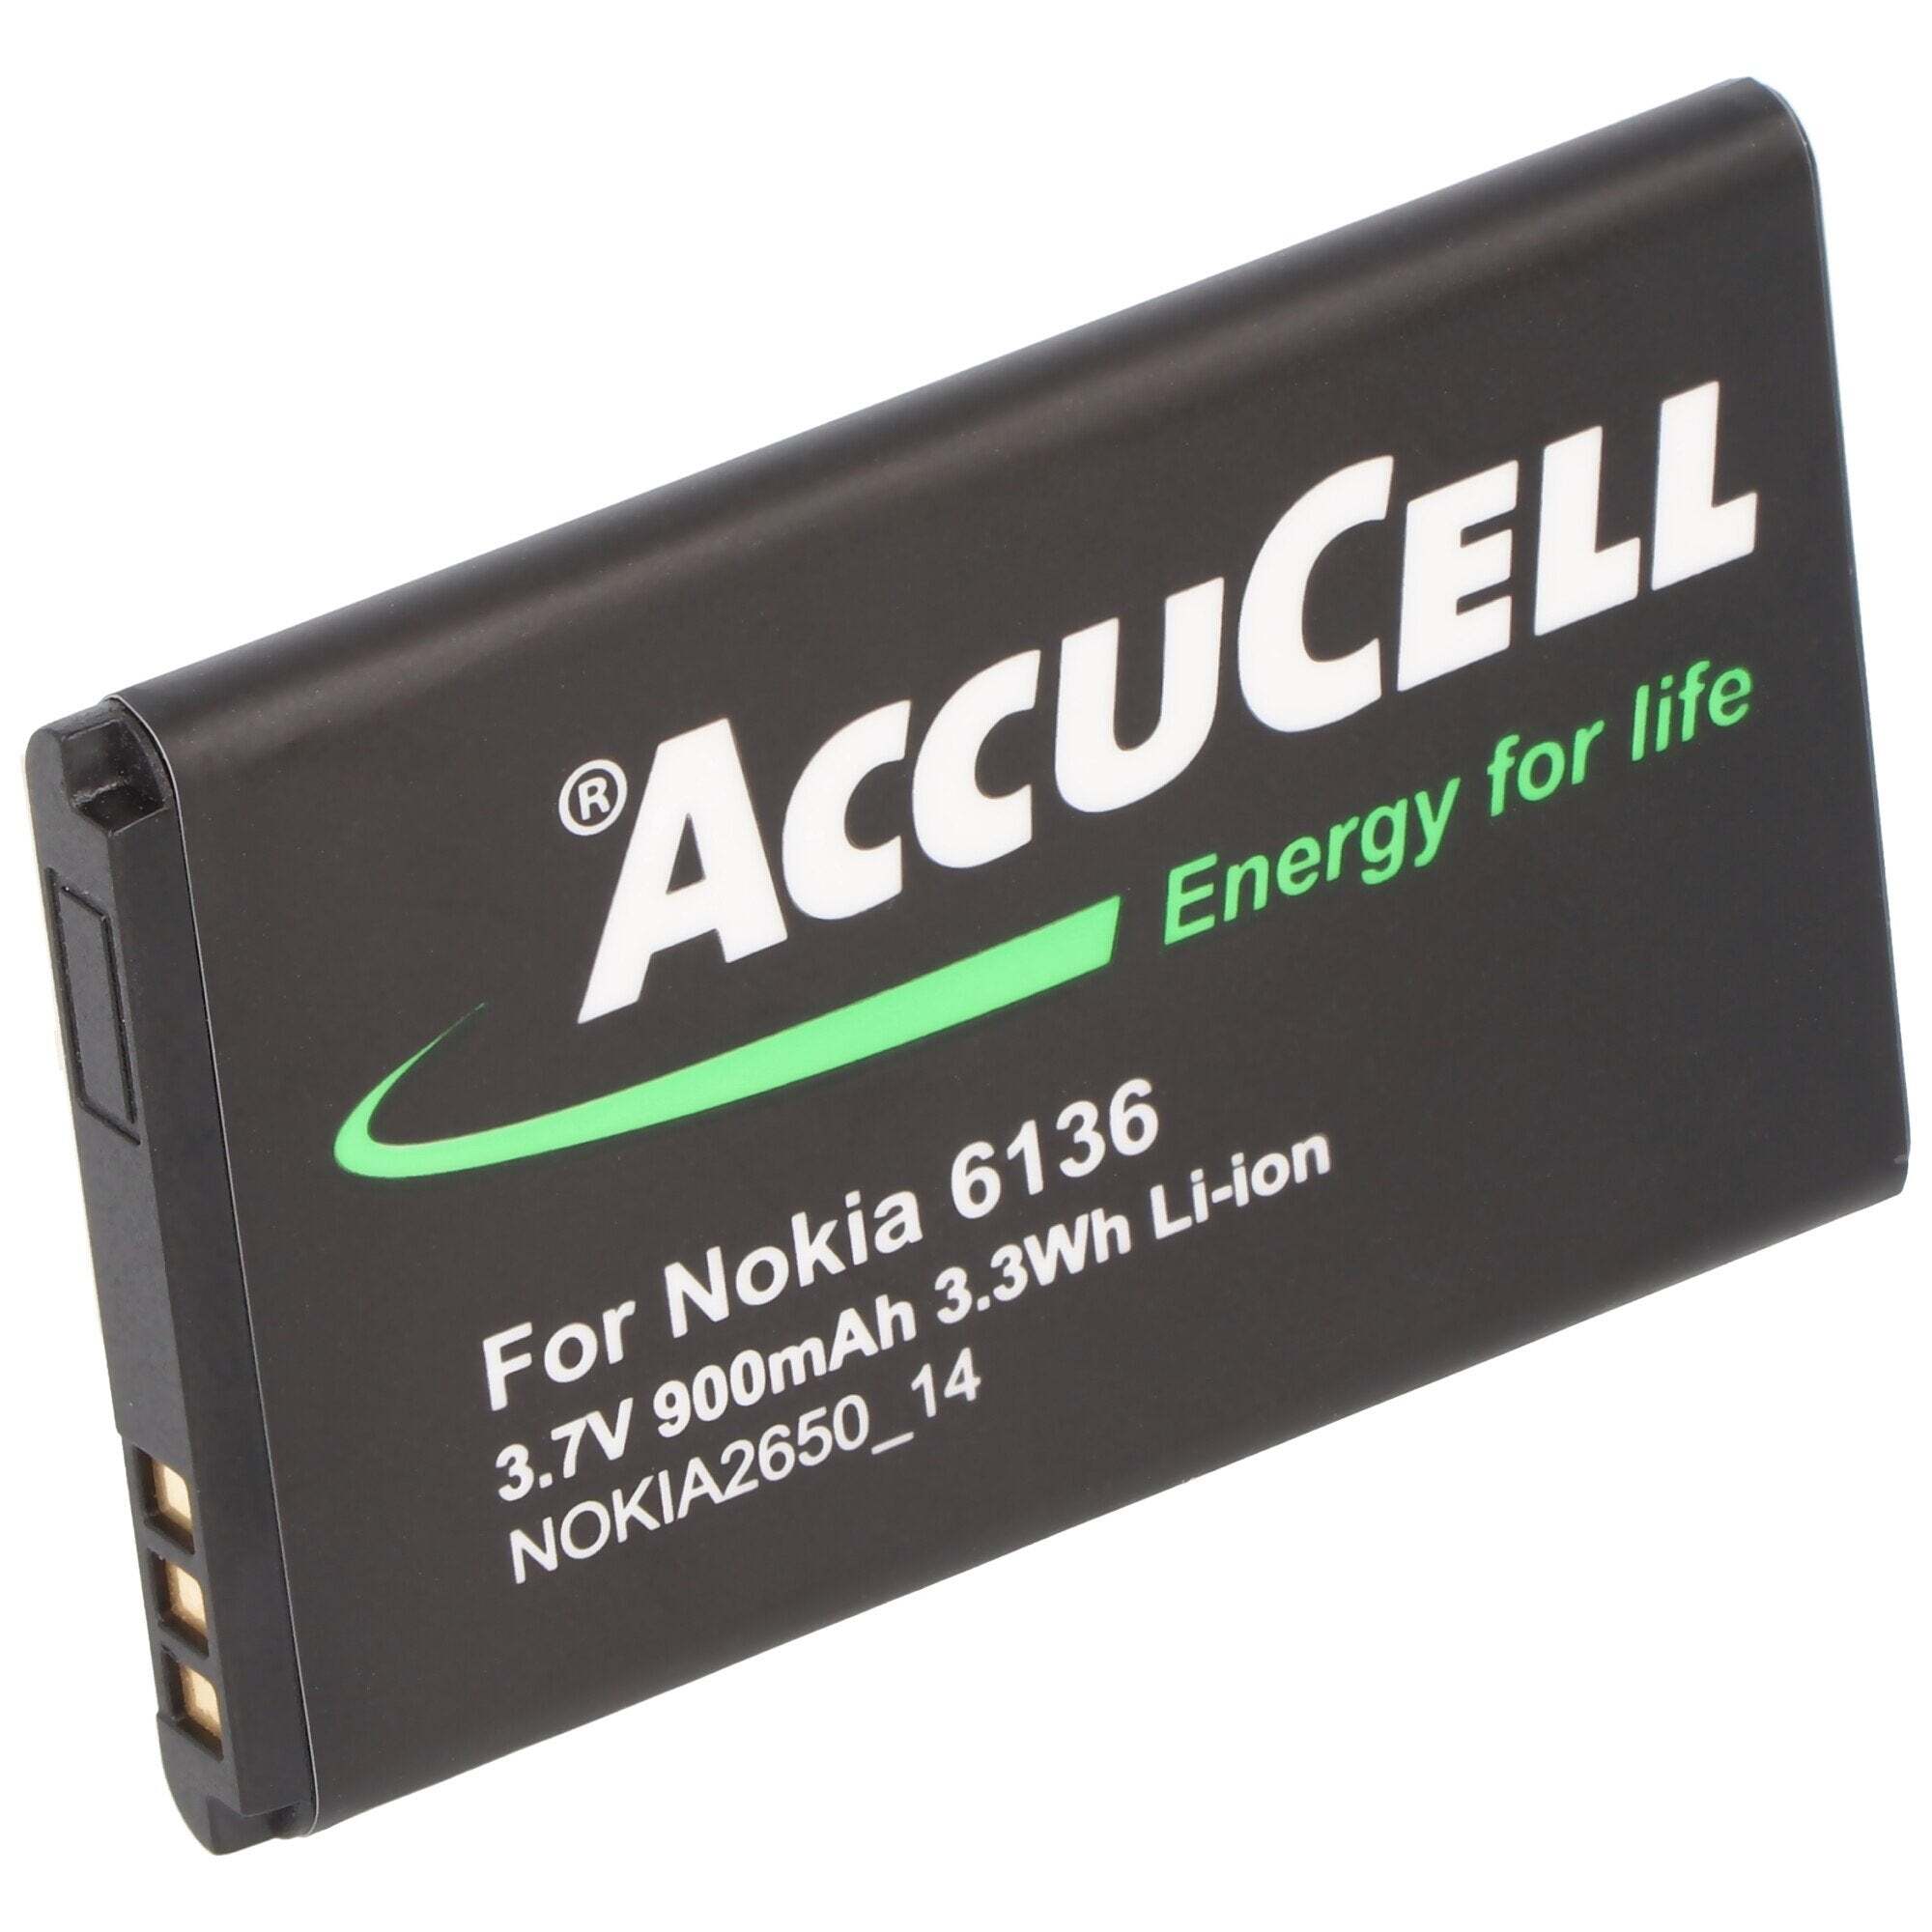 ACCUCELL AccuCell-batterij geschikt voor Nokia 6100, BL-4C